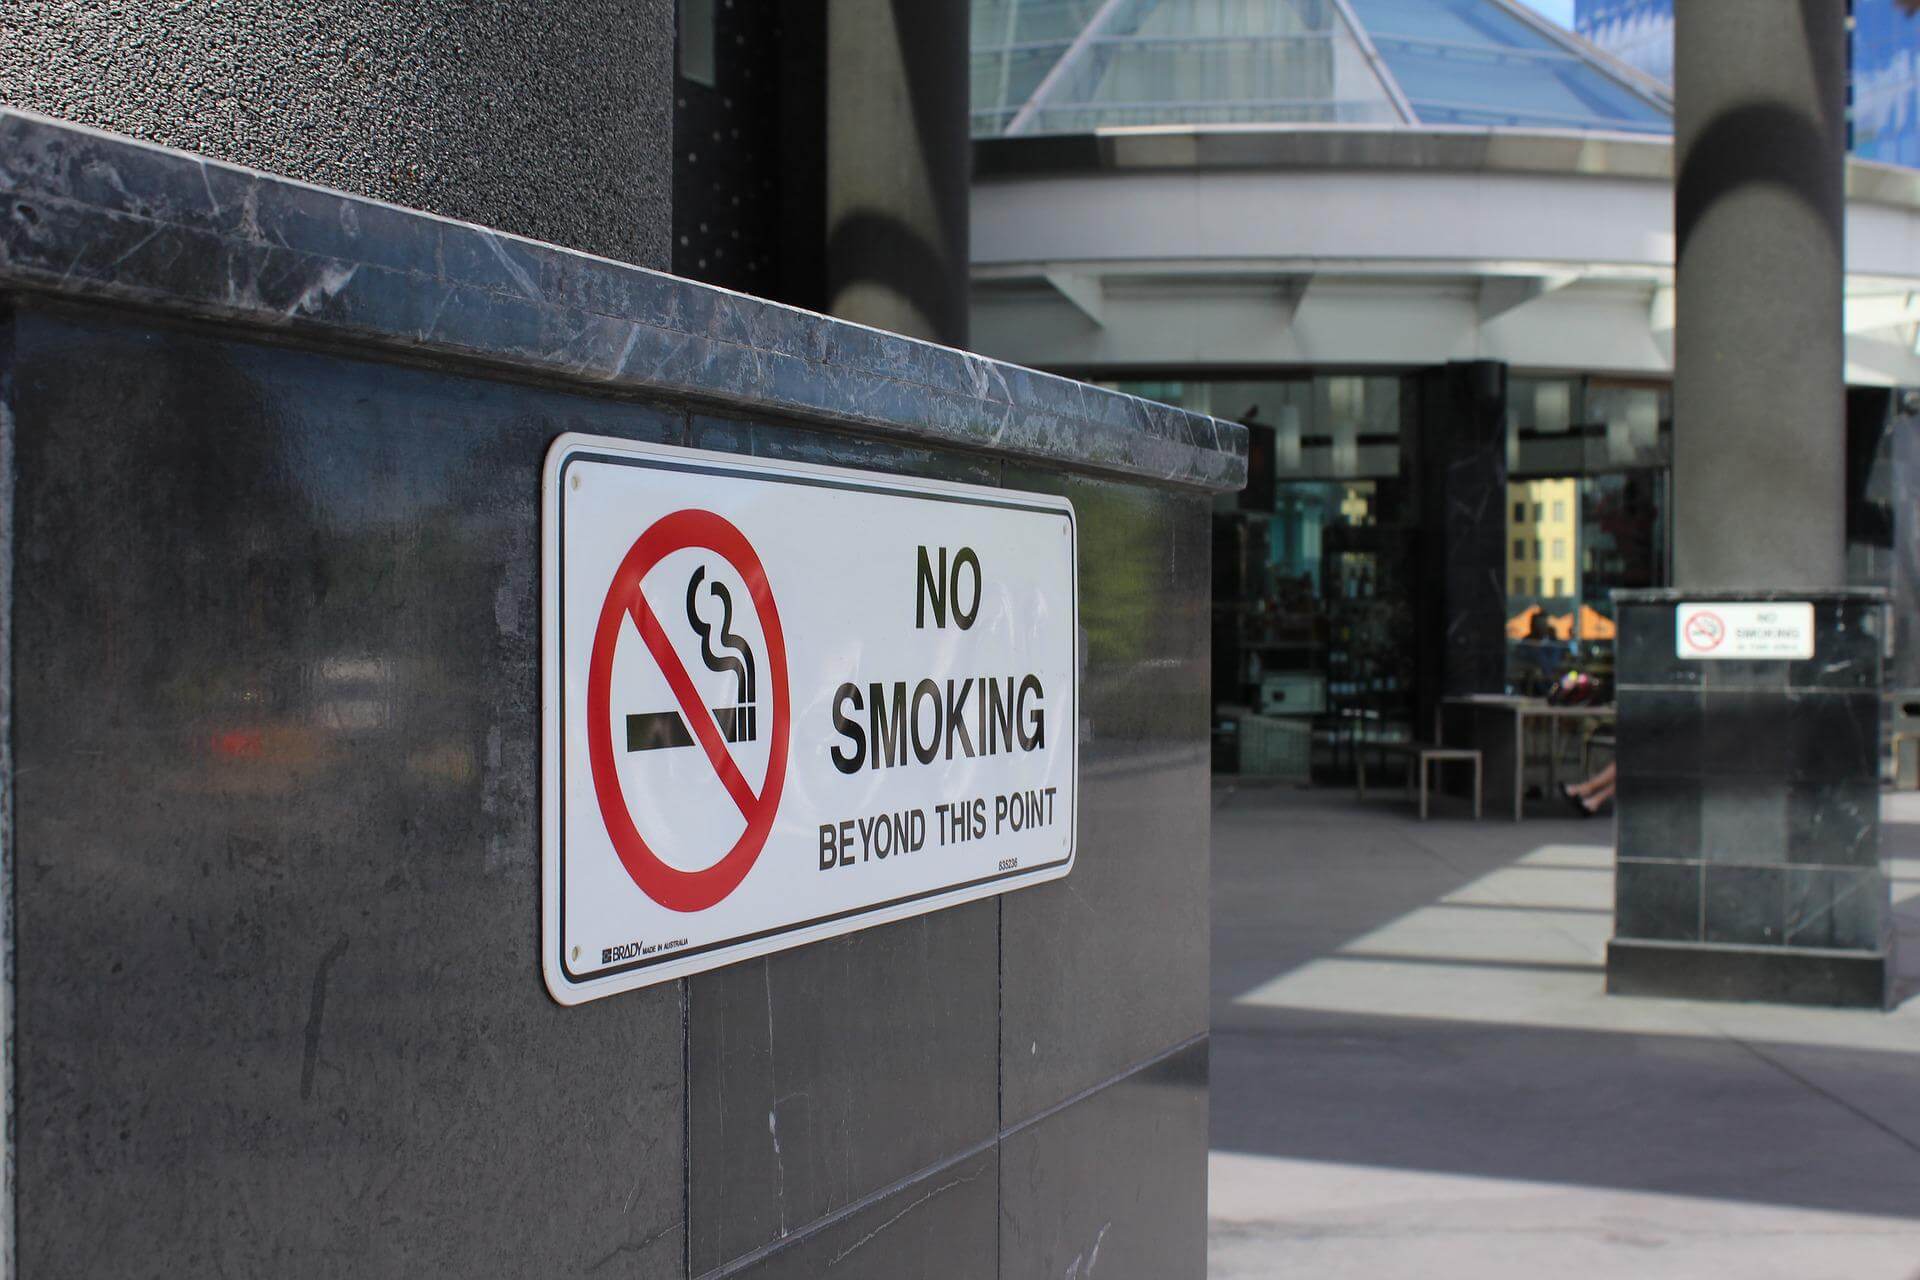 مجلس مدينة ليفربول يحظر التدخين في الأماكن العامة (بيكسباي)